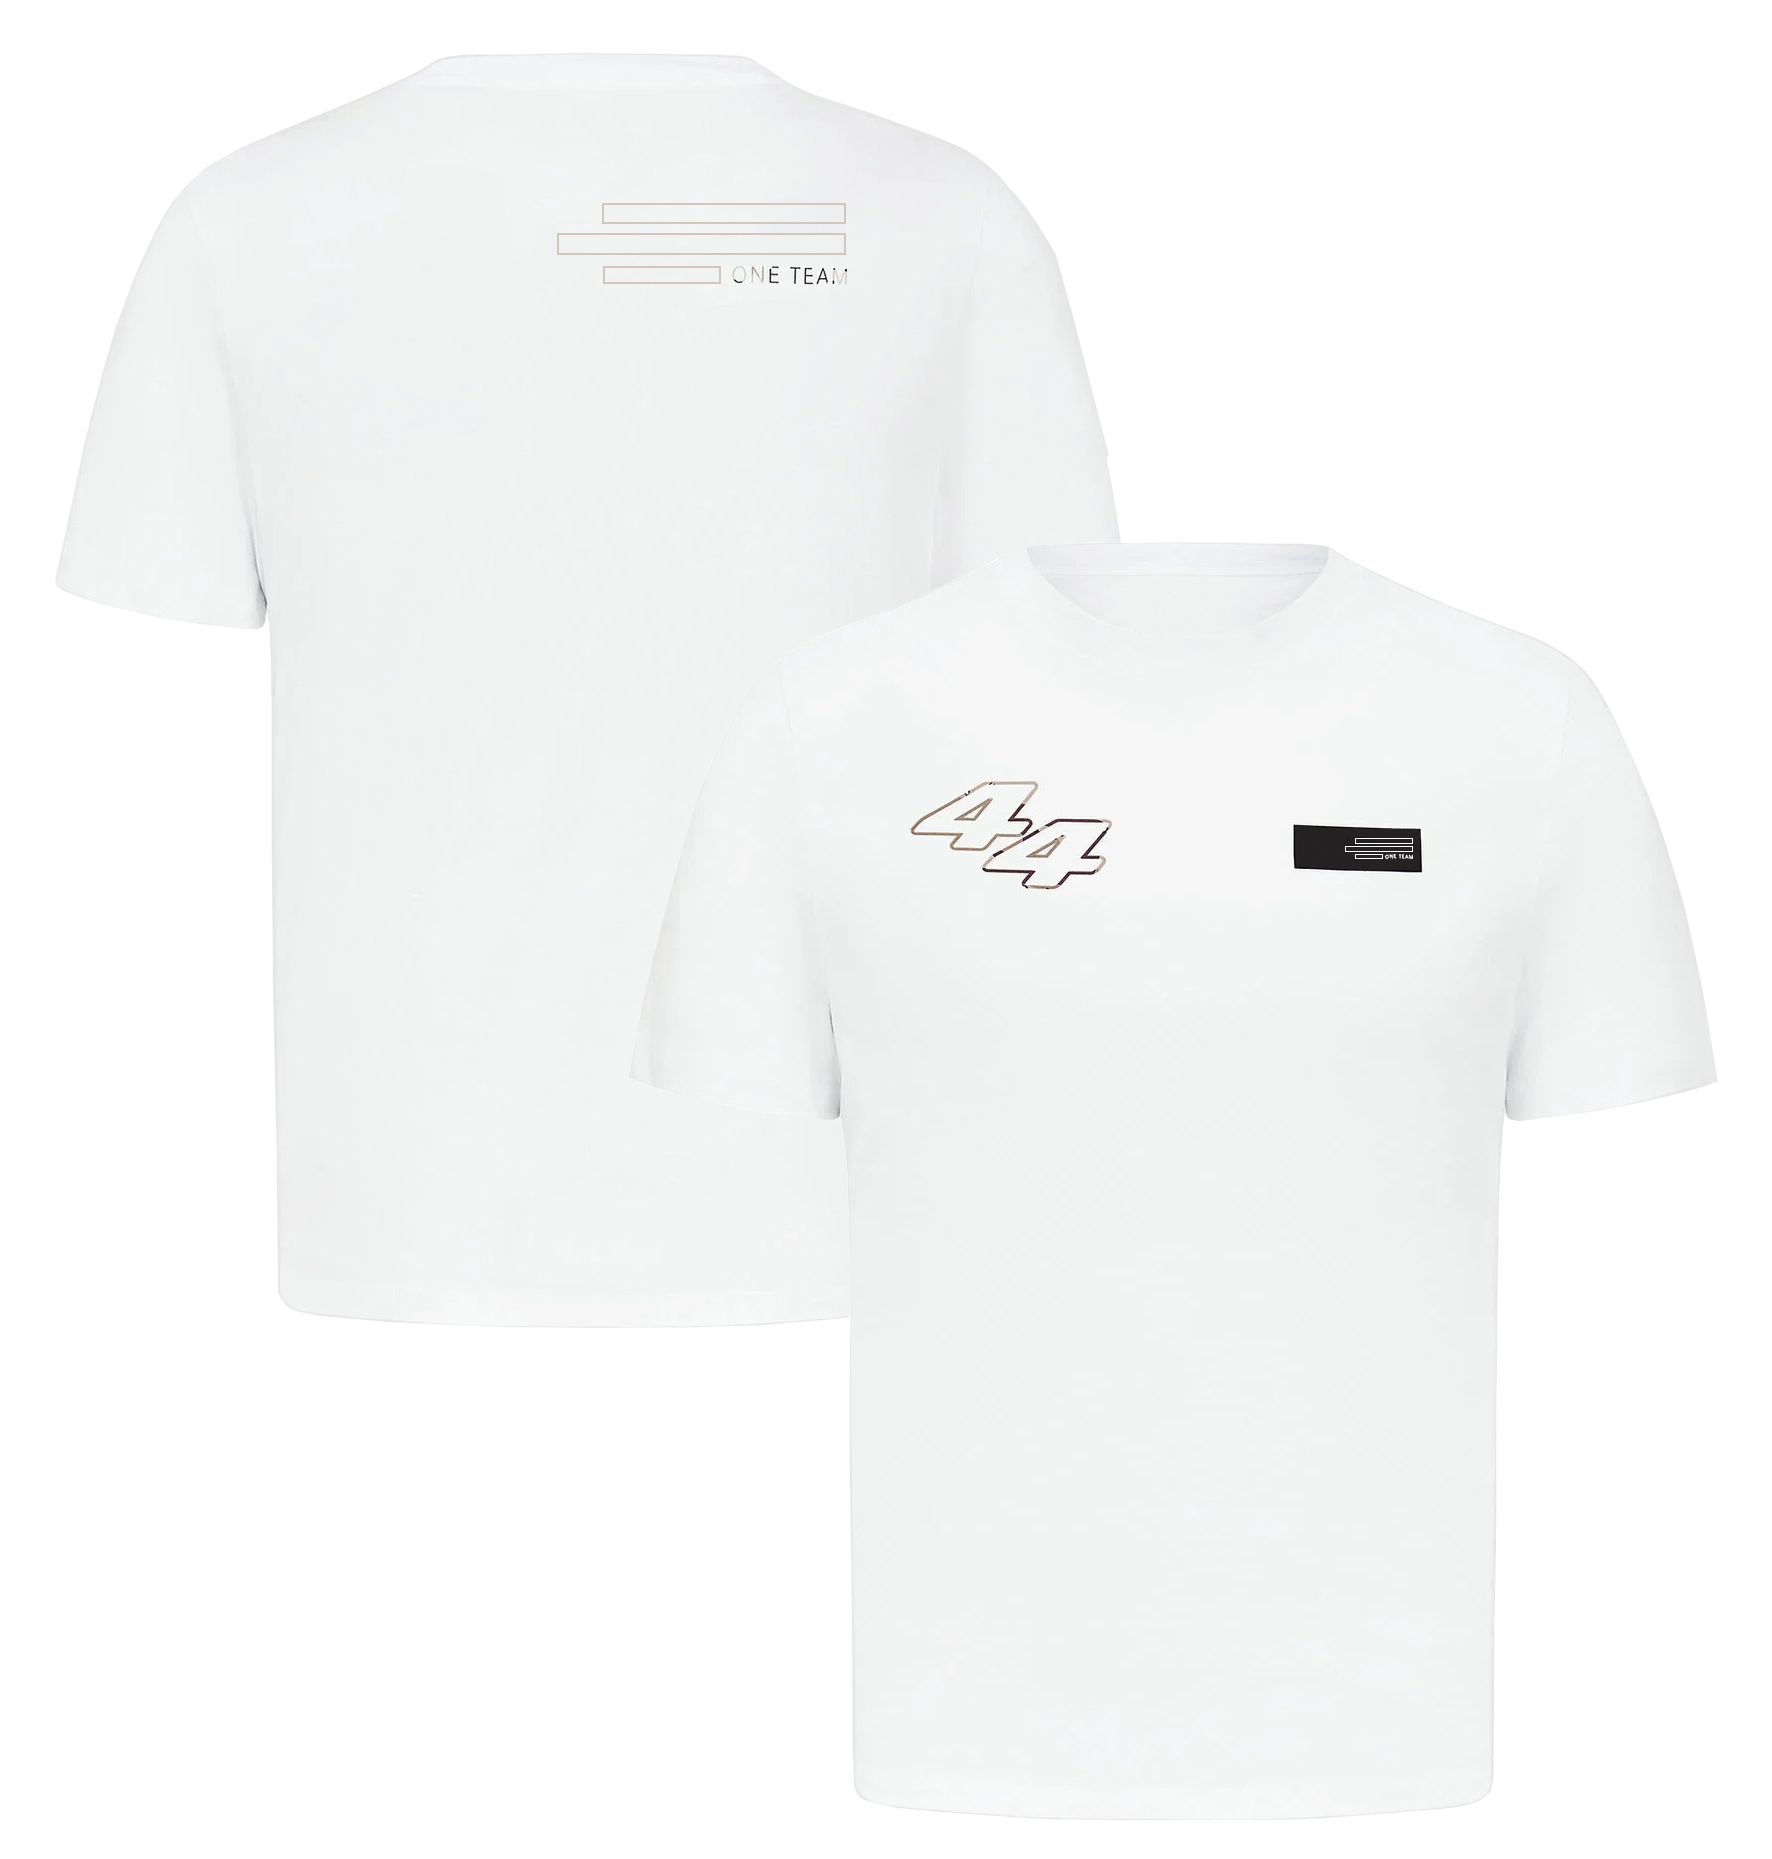 F1 44 63 Driver T-Shirt Formula 1 Team Racing Logo T-Shirt Men Women Fashion O-Neck T-Shirt Tops Tops Tops Jersey Plus Size